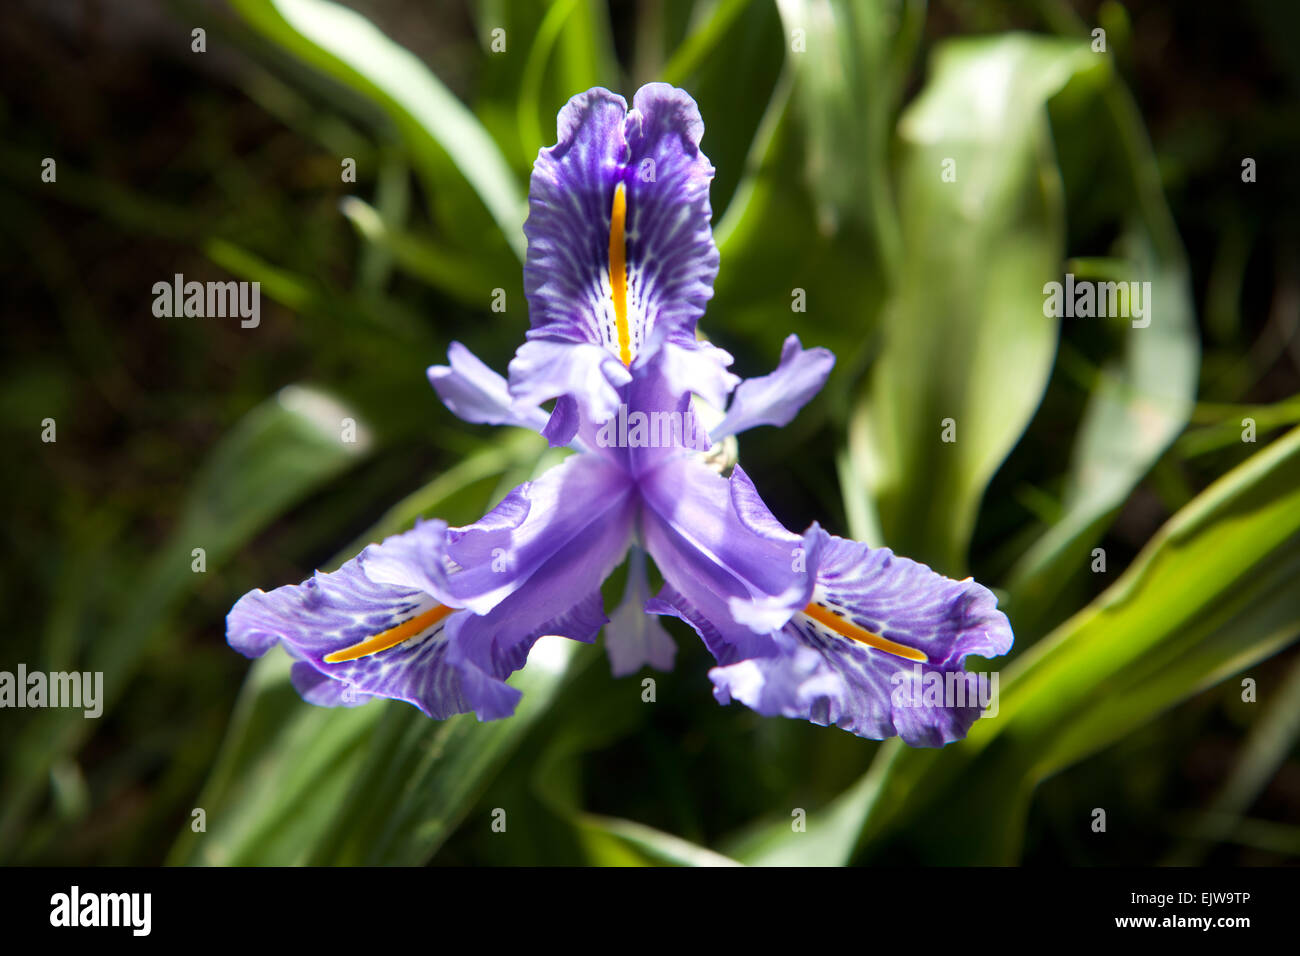 Iris violet flower bloom, trouvés sur une plante sauvage de plus en plus. Iris planifolia Banque D'Images